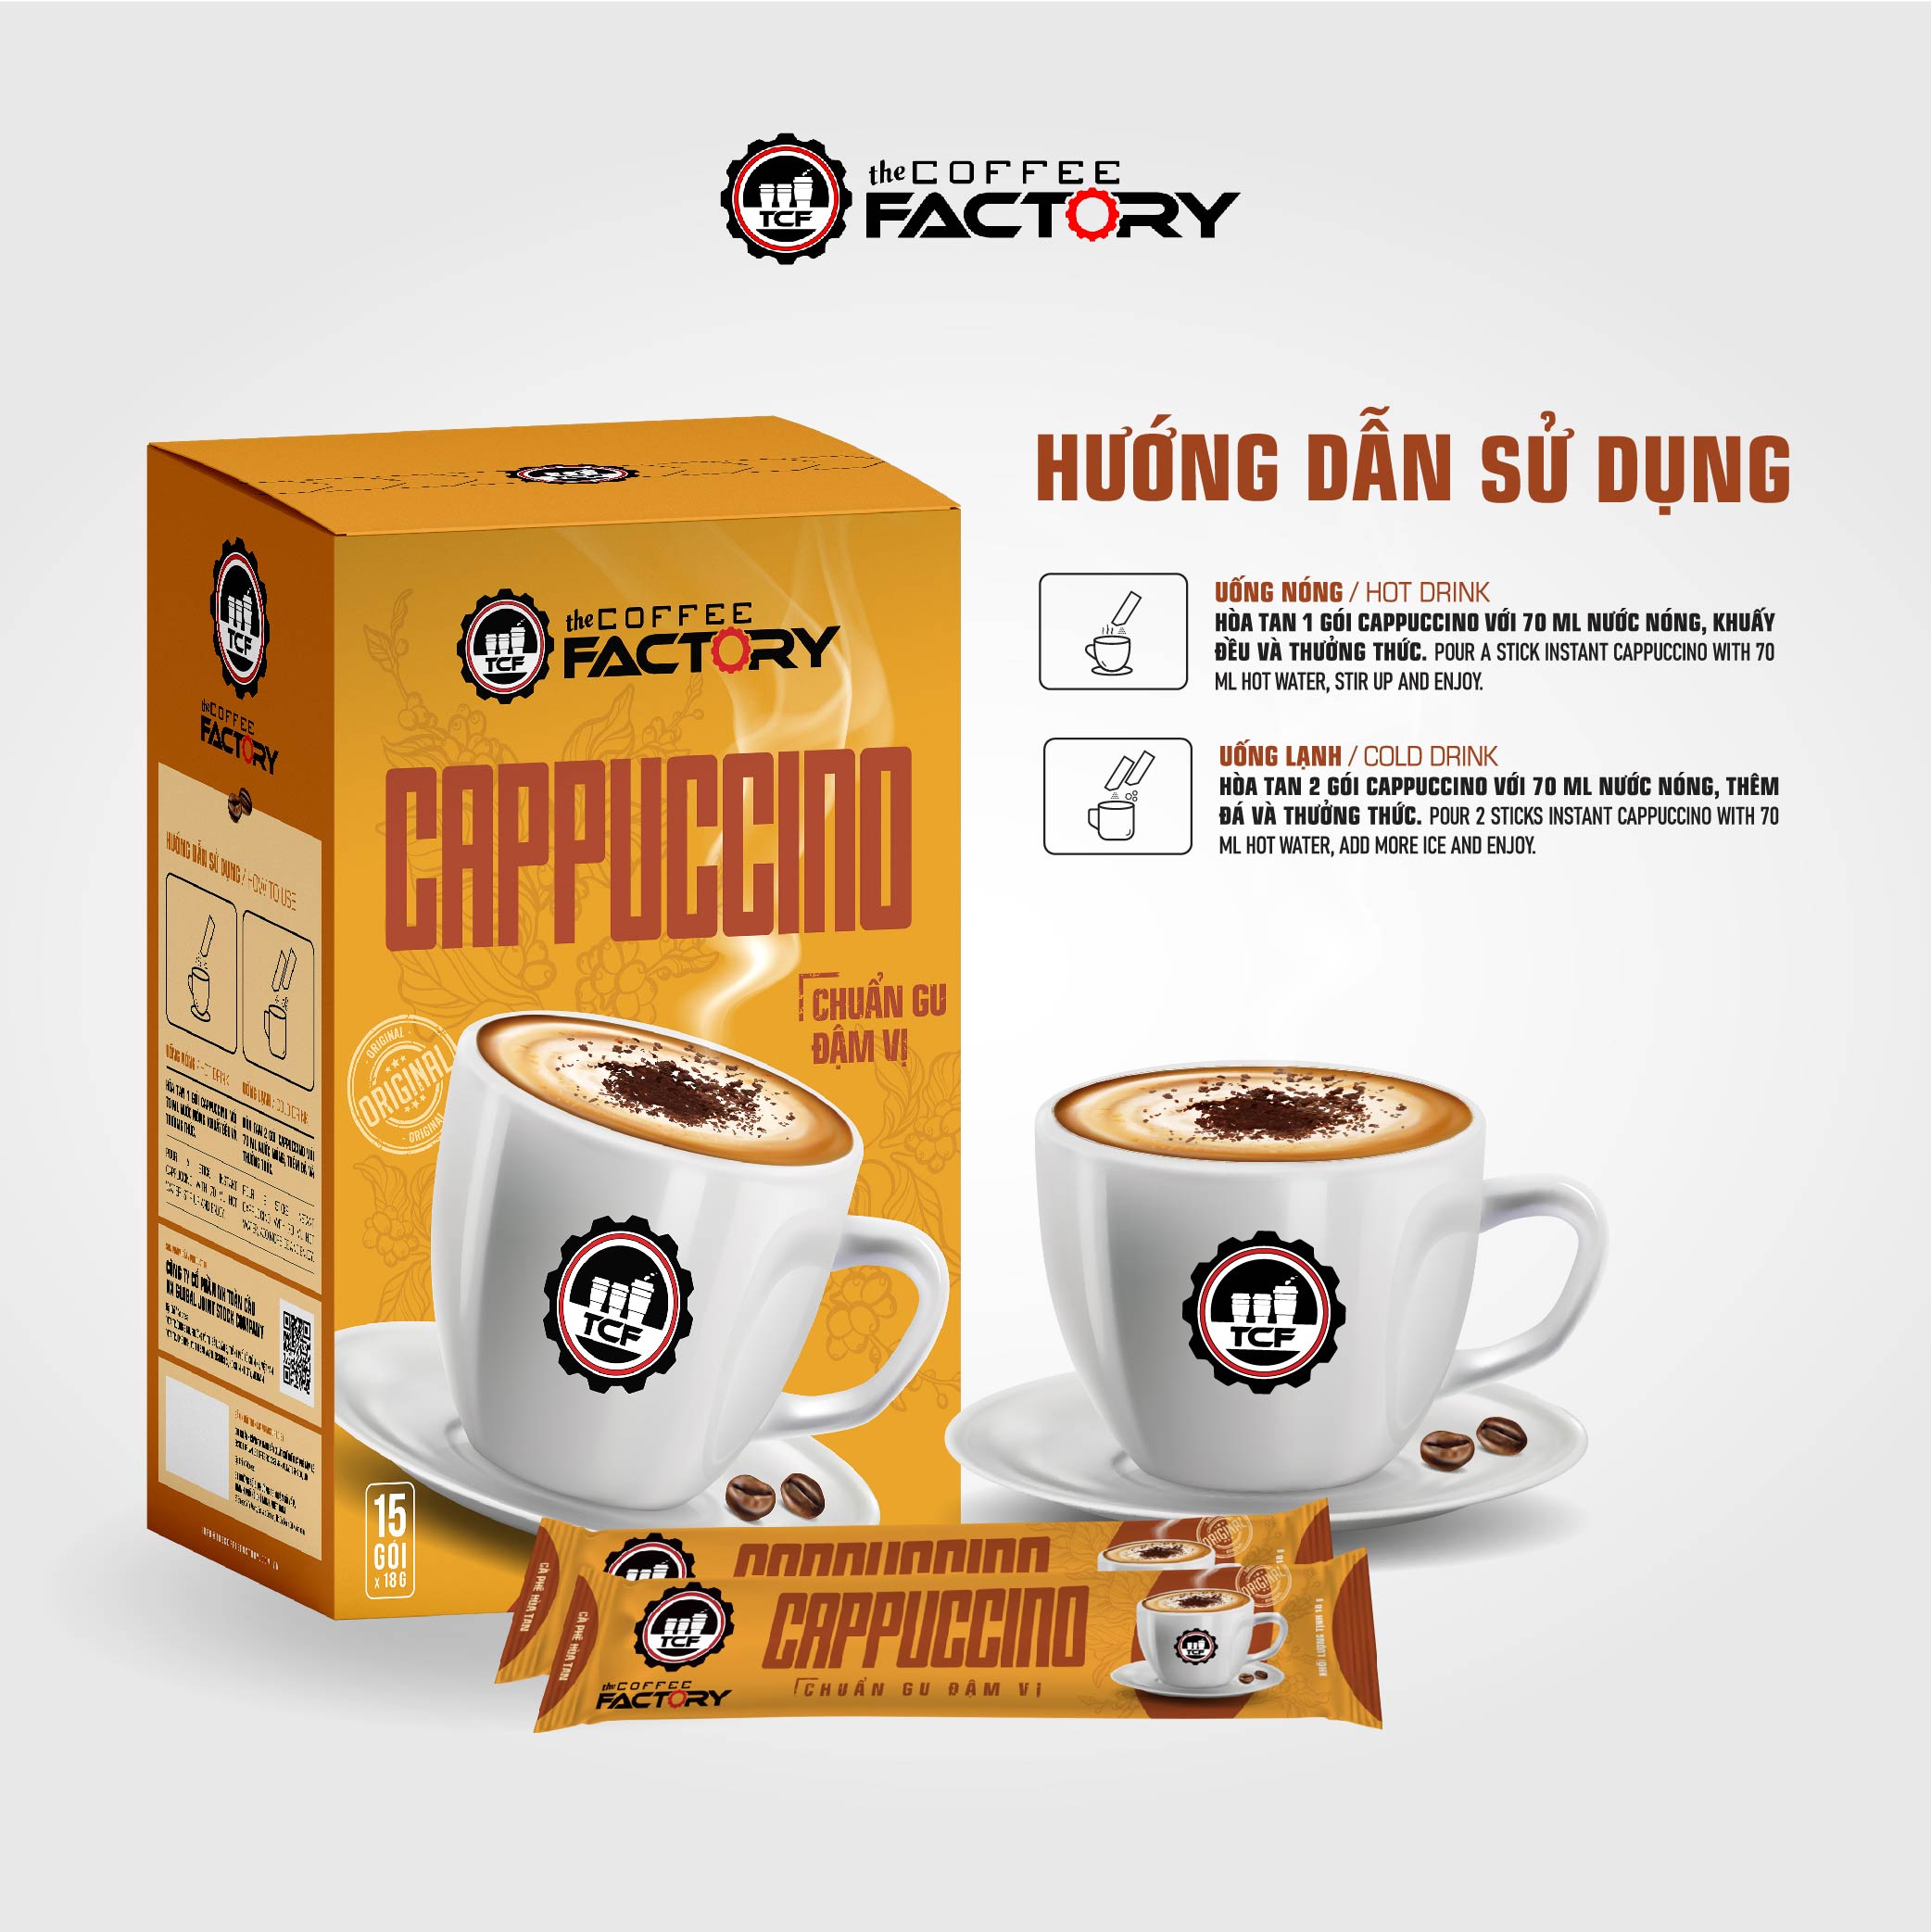 Cà phê Cappuccino hòa tan The Coffee Factory (Hộp 15 gói x 18g)